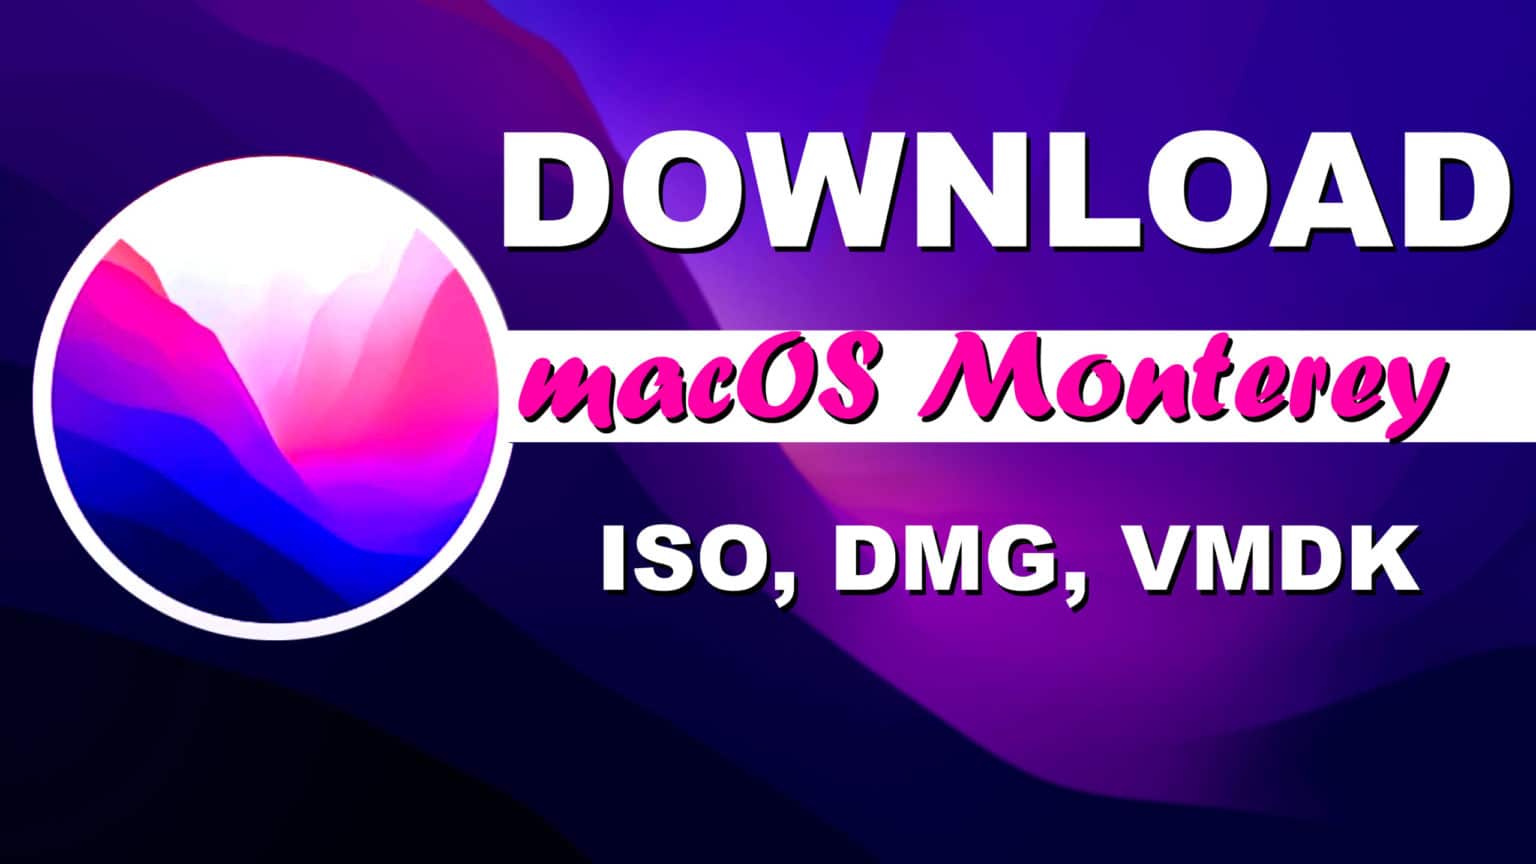 itunes for macos monterey 12.1 download